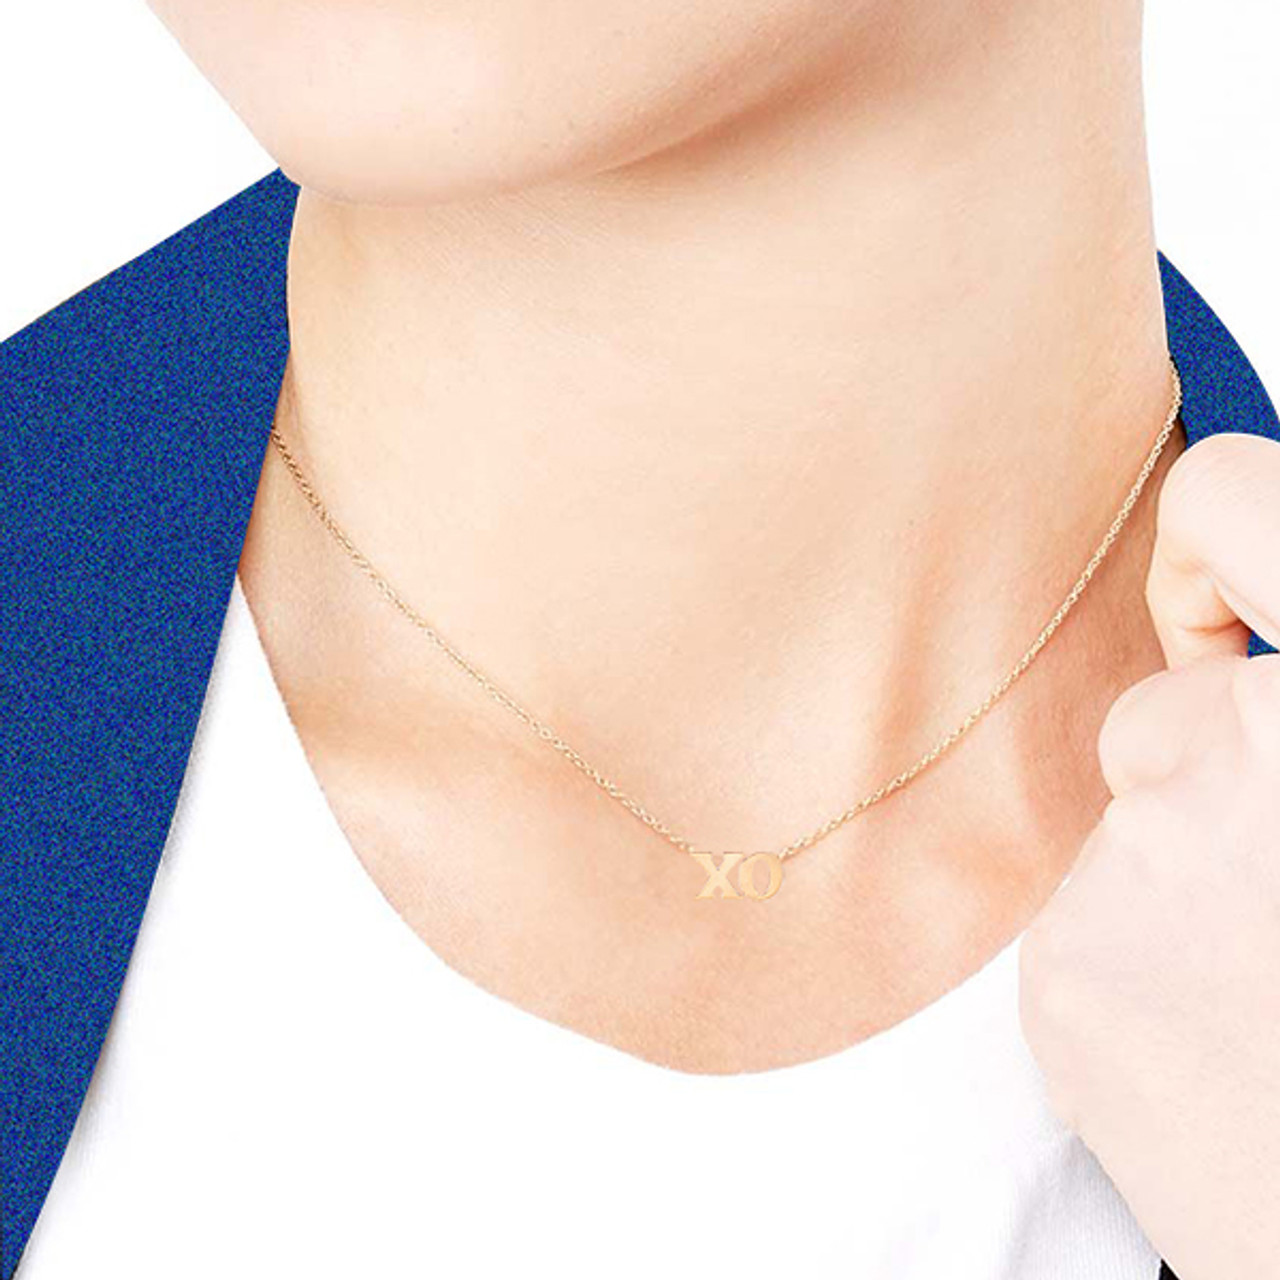 XO CZ Gold Necklace - Womens Fashion Jewelry – Lil Pepper Jewelry